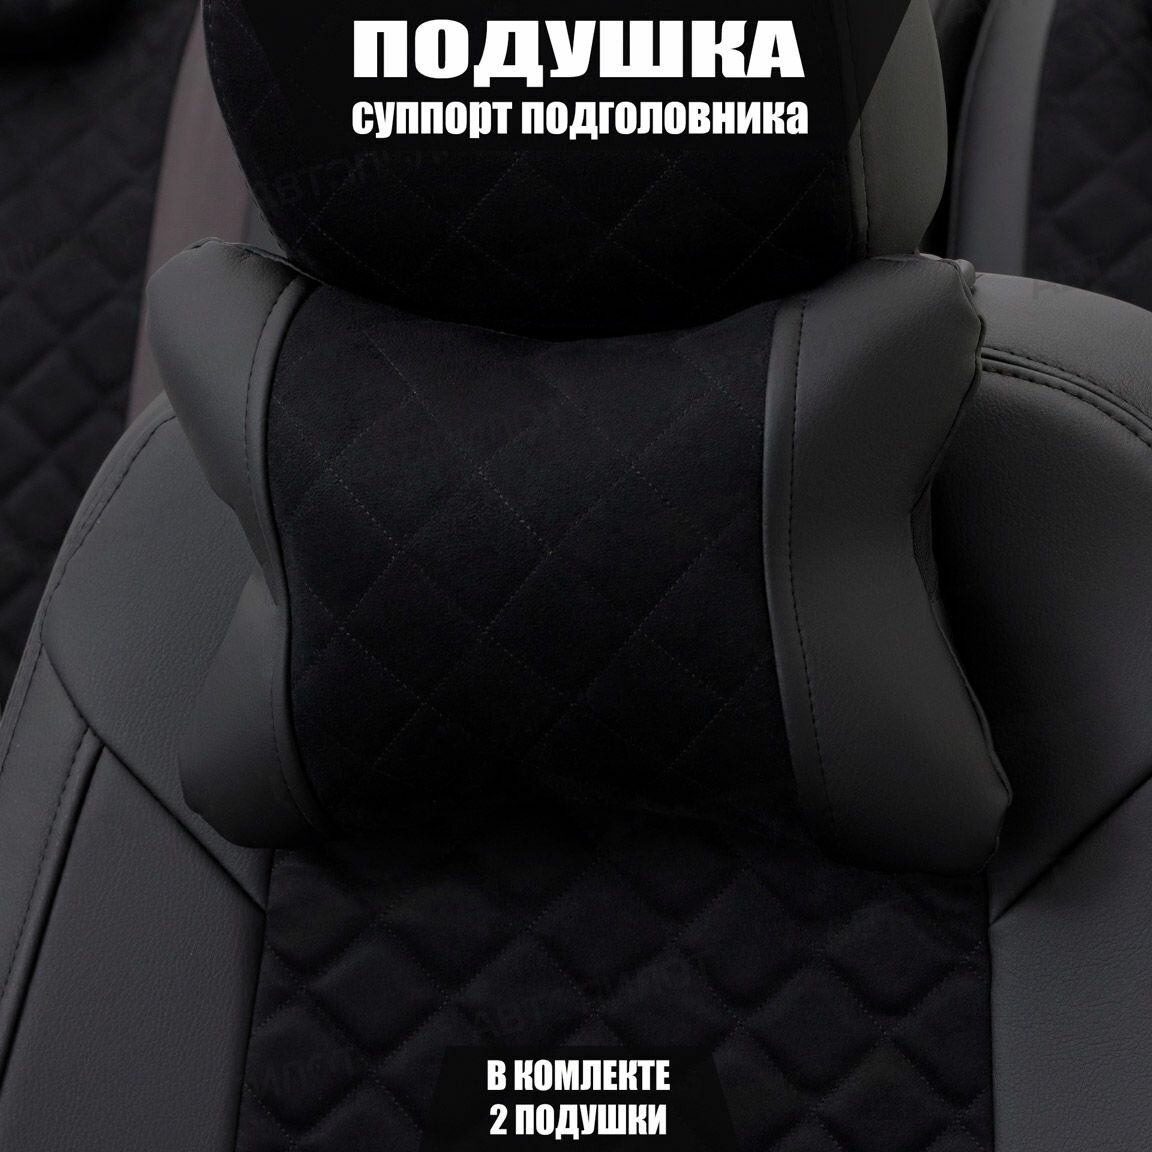 Подушки под шею (суппорт подголовника) для Ниссан Альмера (2012 - 2018) седан / Nissan Almera Ромб Алькантара 2 подушки Черный